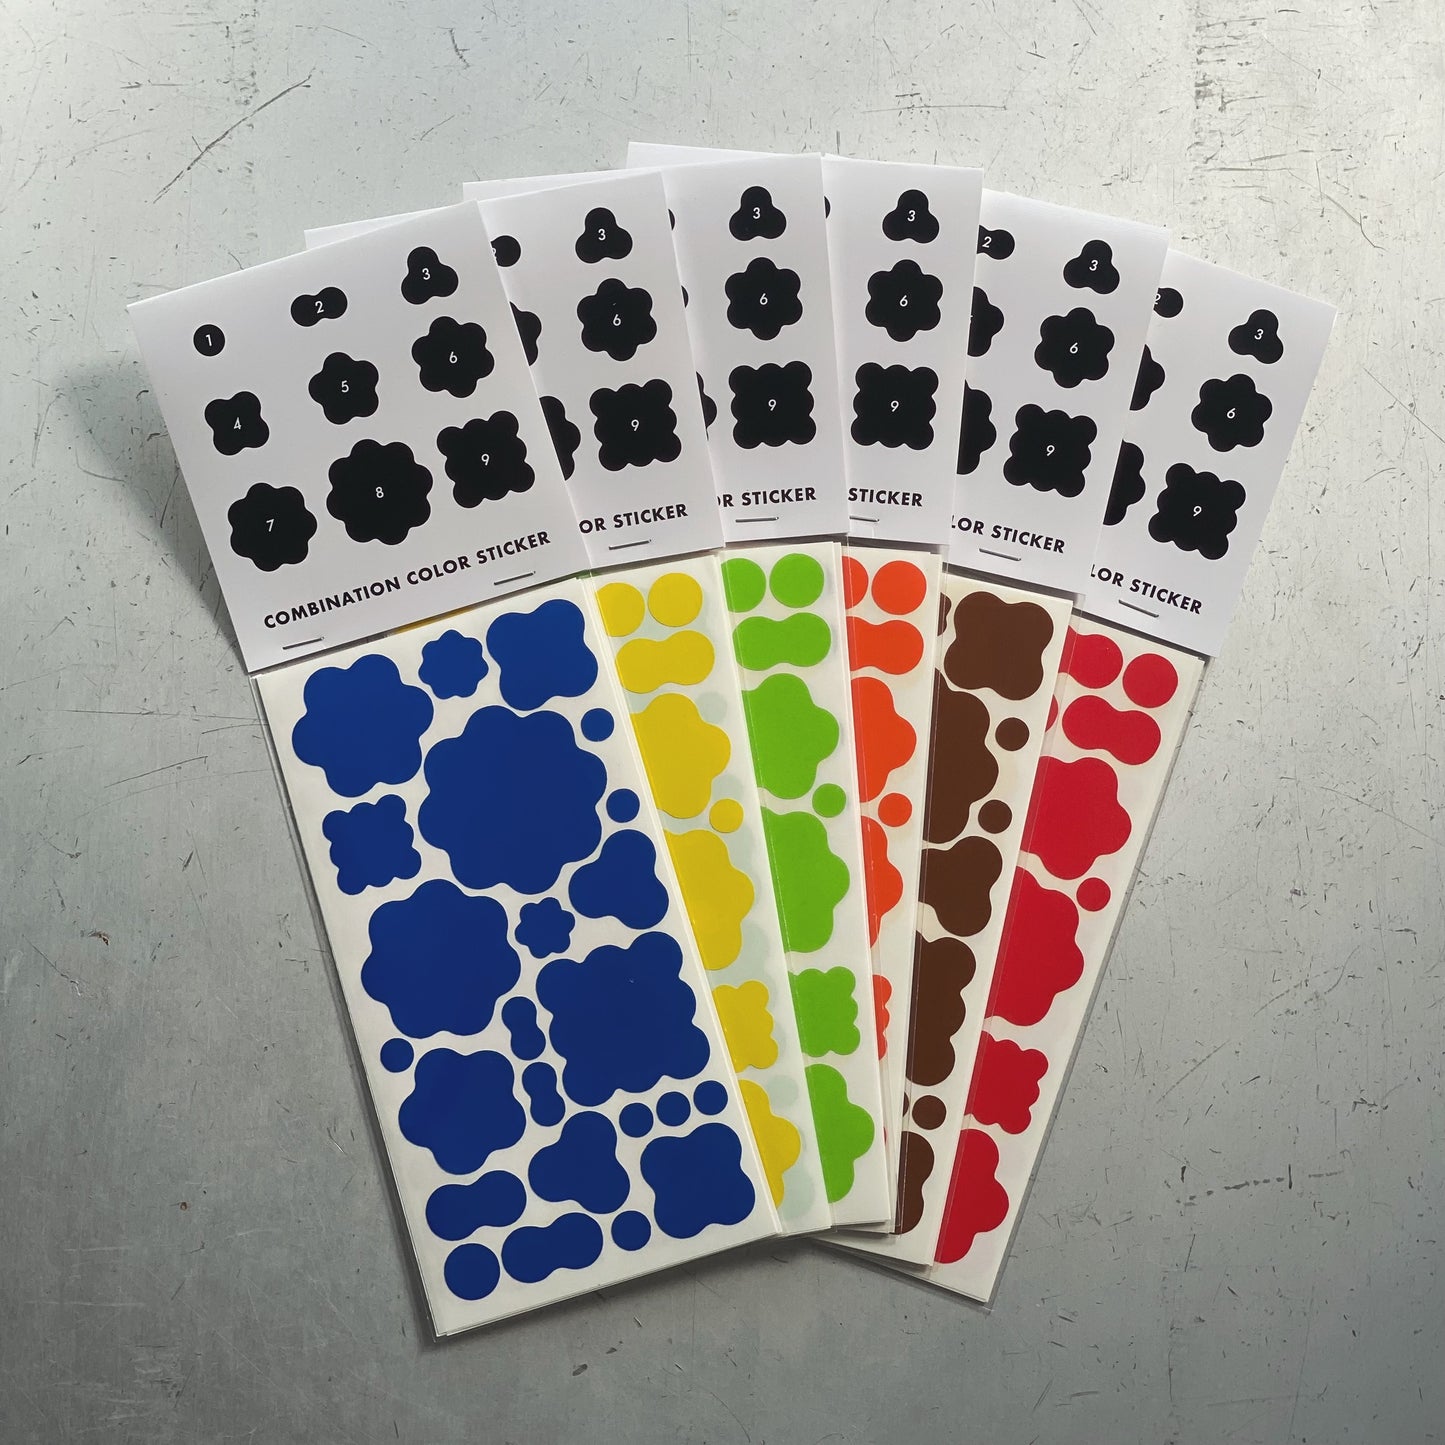 Combination color sticker